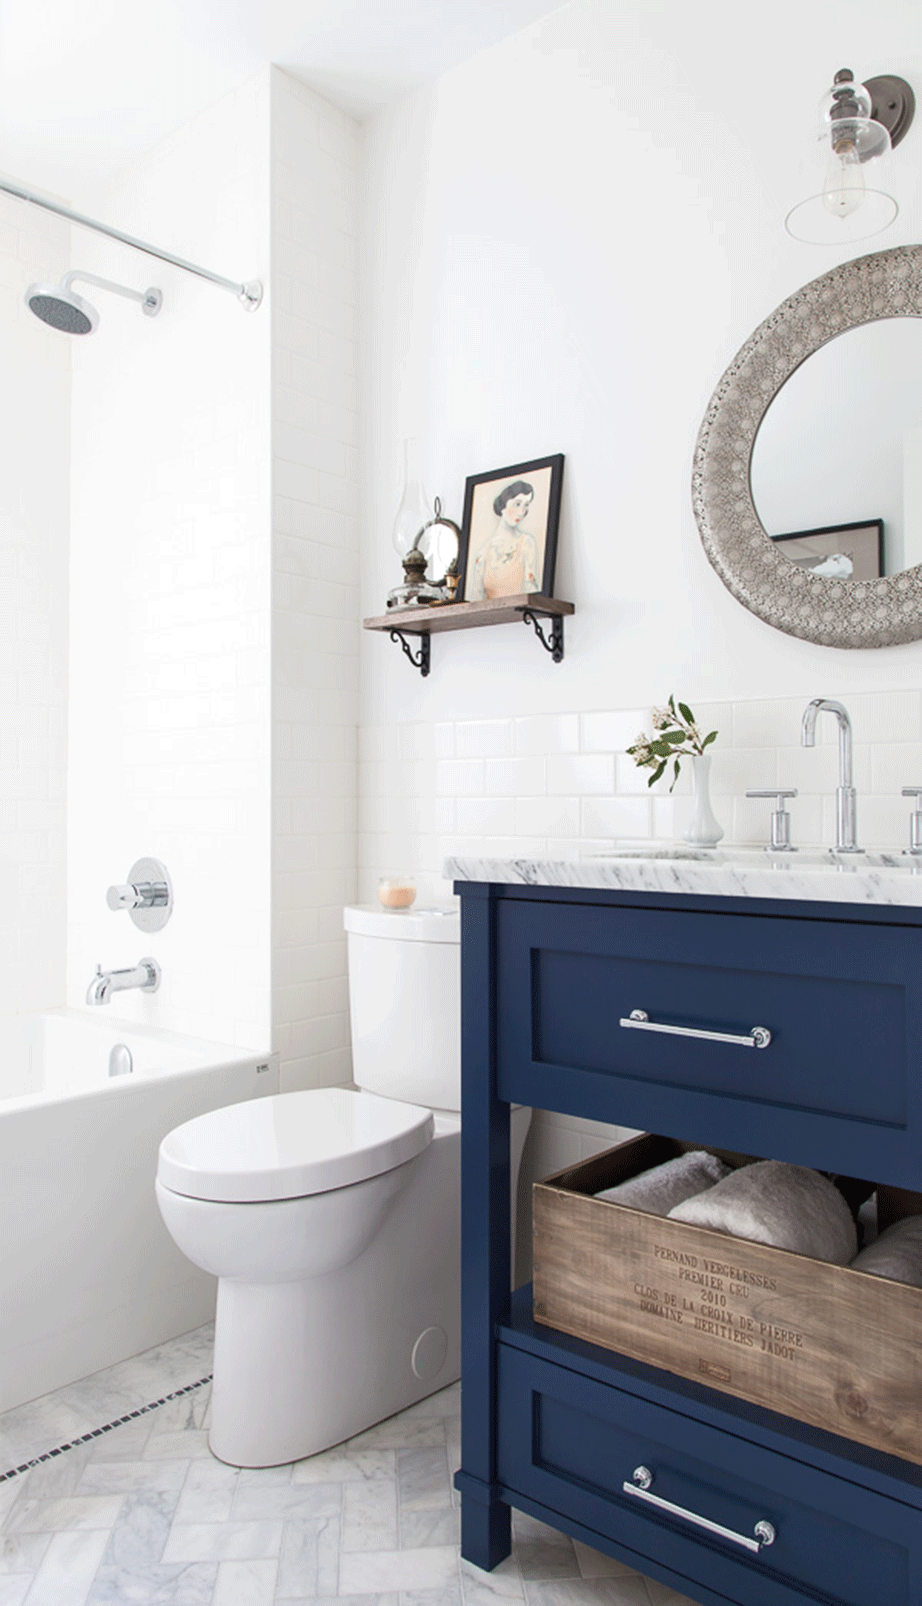 Ένας στρογγυλός καθρέπτης με μεταλλικό περίγραμμα και διακριτικά σκαλίσματα πάνω από τον νιπτήρα θα συμπληρώσει διακοσμητικά το μπάνιο σας. 